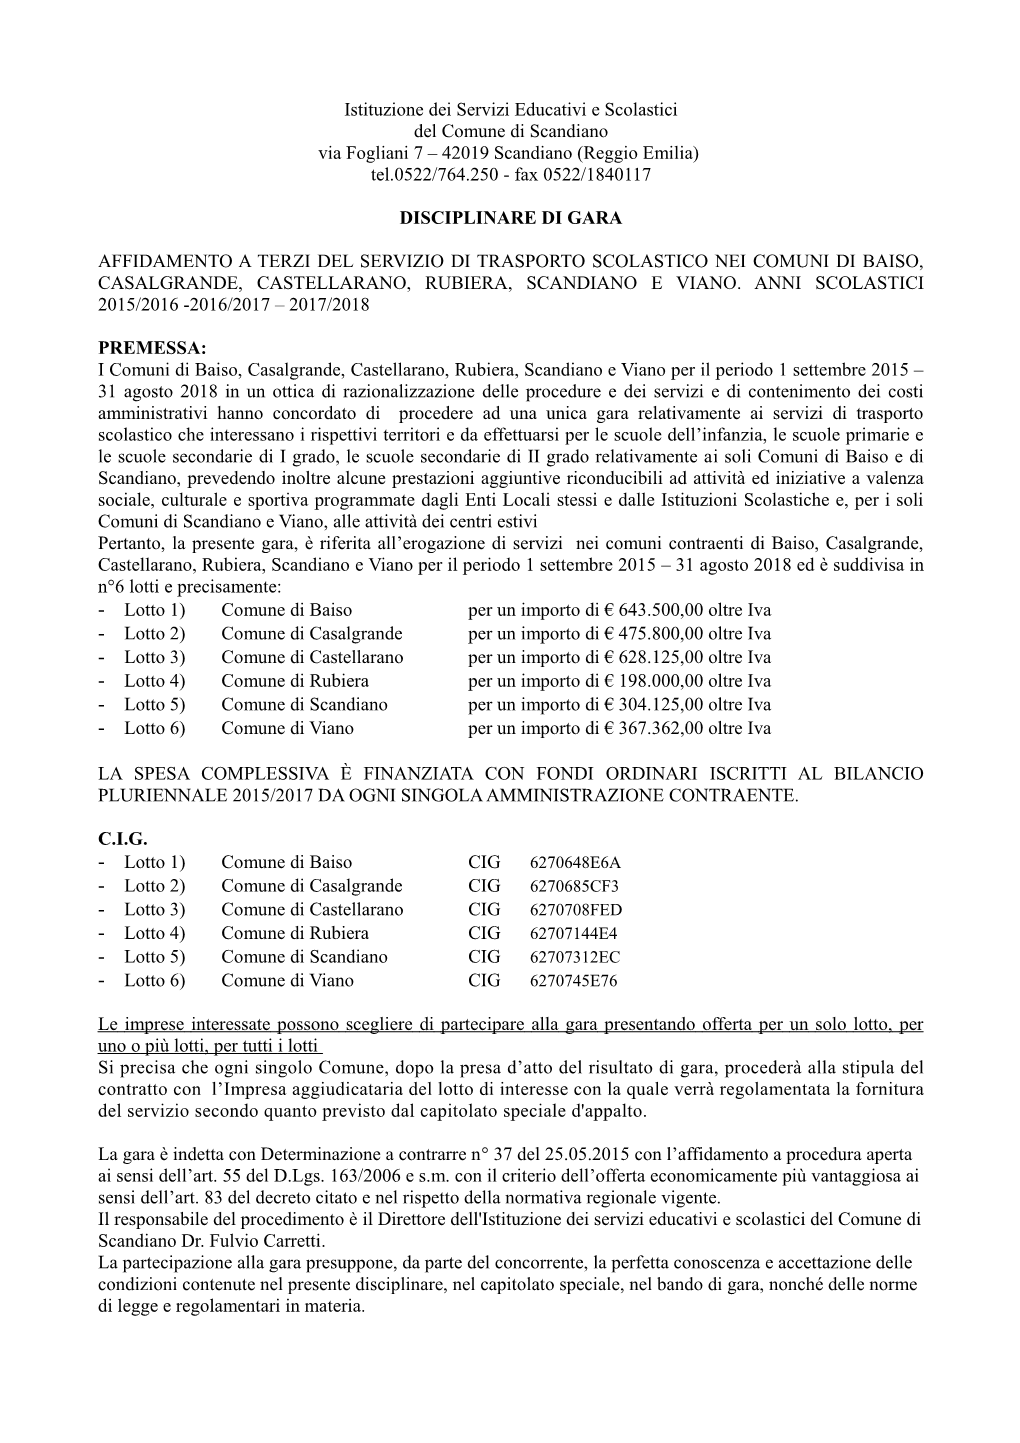 Istituzione Dei Servizi Educativi E Scolastici Del Comune Di Scandiano Via Fogliani 7 – 42019 Scandiano (Reggio Emilia) Tel.0522/764.250 - Fax 0522/1840117